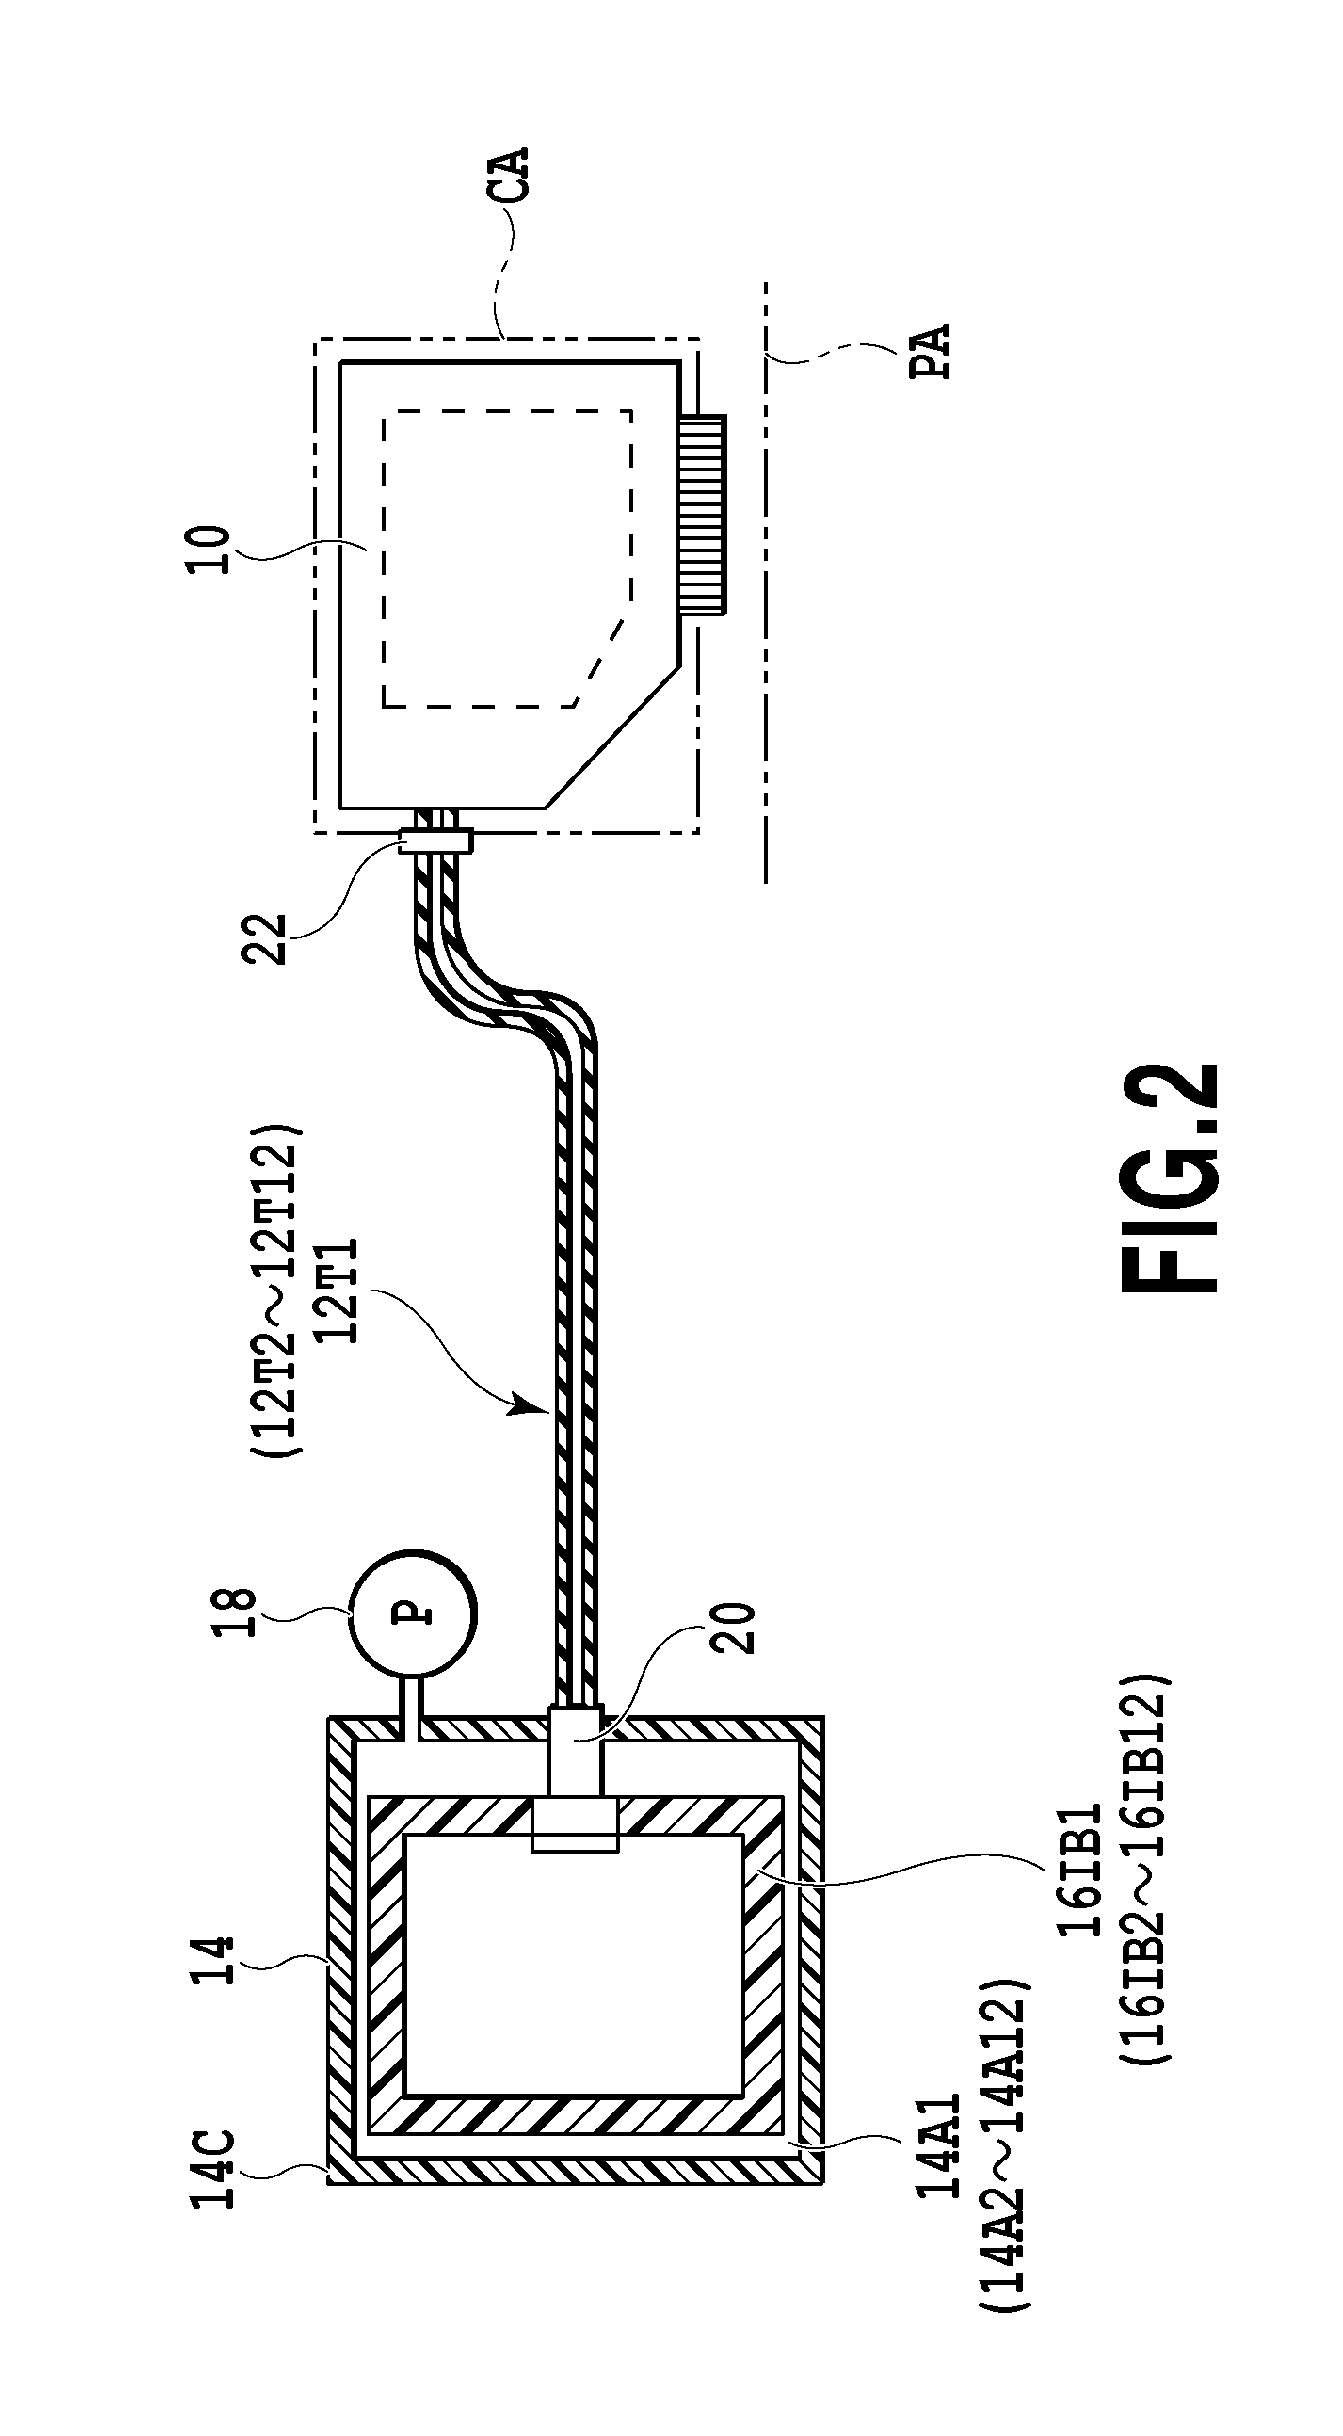 Liquid ejecting apparatus